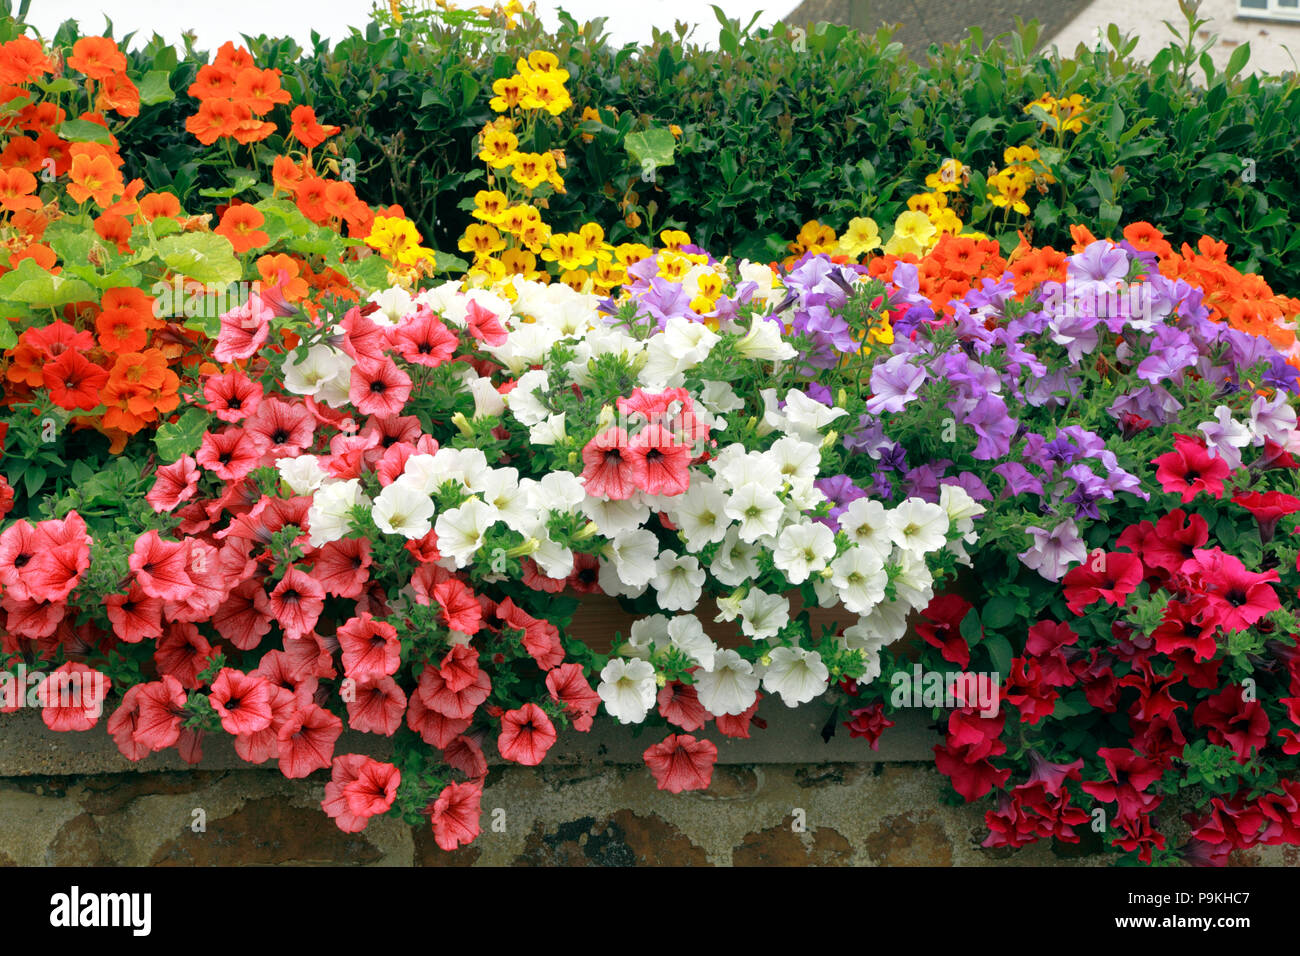 Garten Wand, Petunien, lila, orange, pink, weiß, gelb Farben, verschiedene Farben Stockfoto